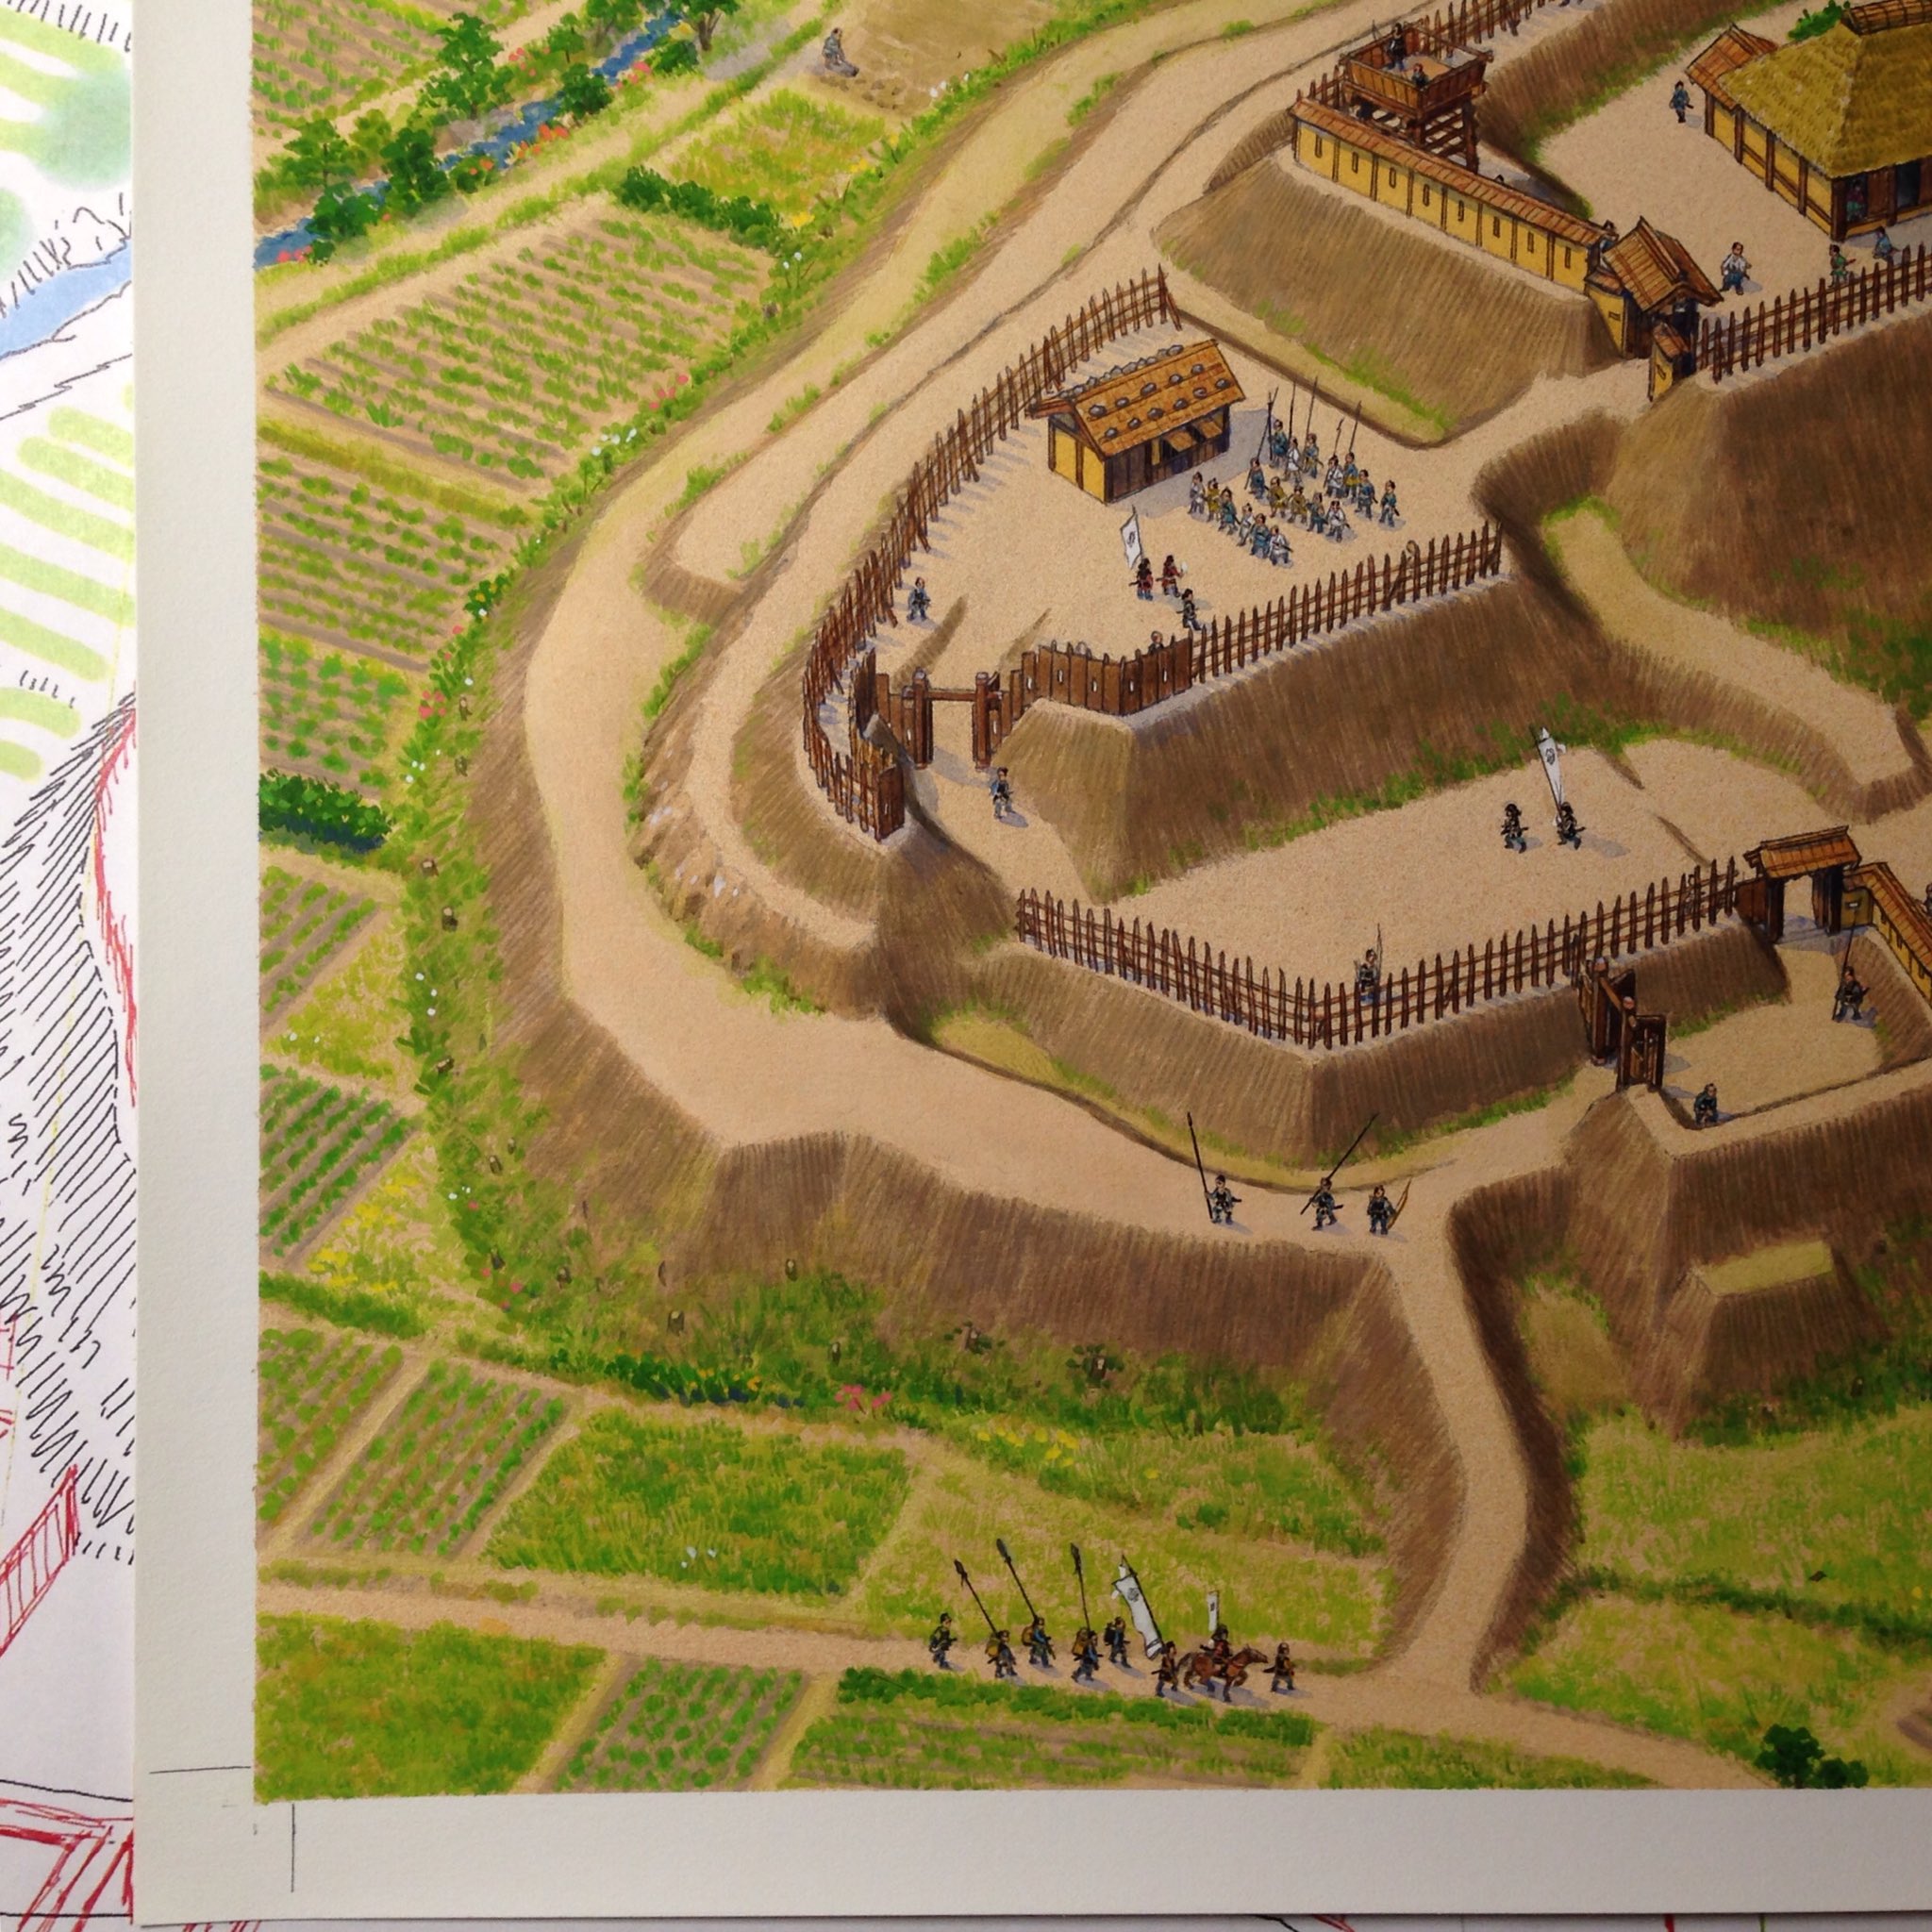 香川元太郎 在 Twitter 上 私の中世城郭の描き方13完成 色々な工程を経て 城の復元イラストが完成します 特に戦国時代の土の城では 地形 縄張りを正確に起こせるかどうかがポイントだと思います T Co Rv4gl2g0y8 Twitter